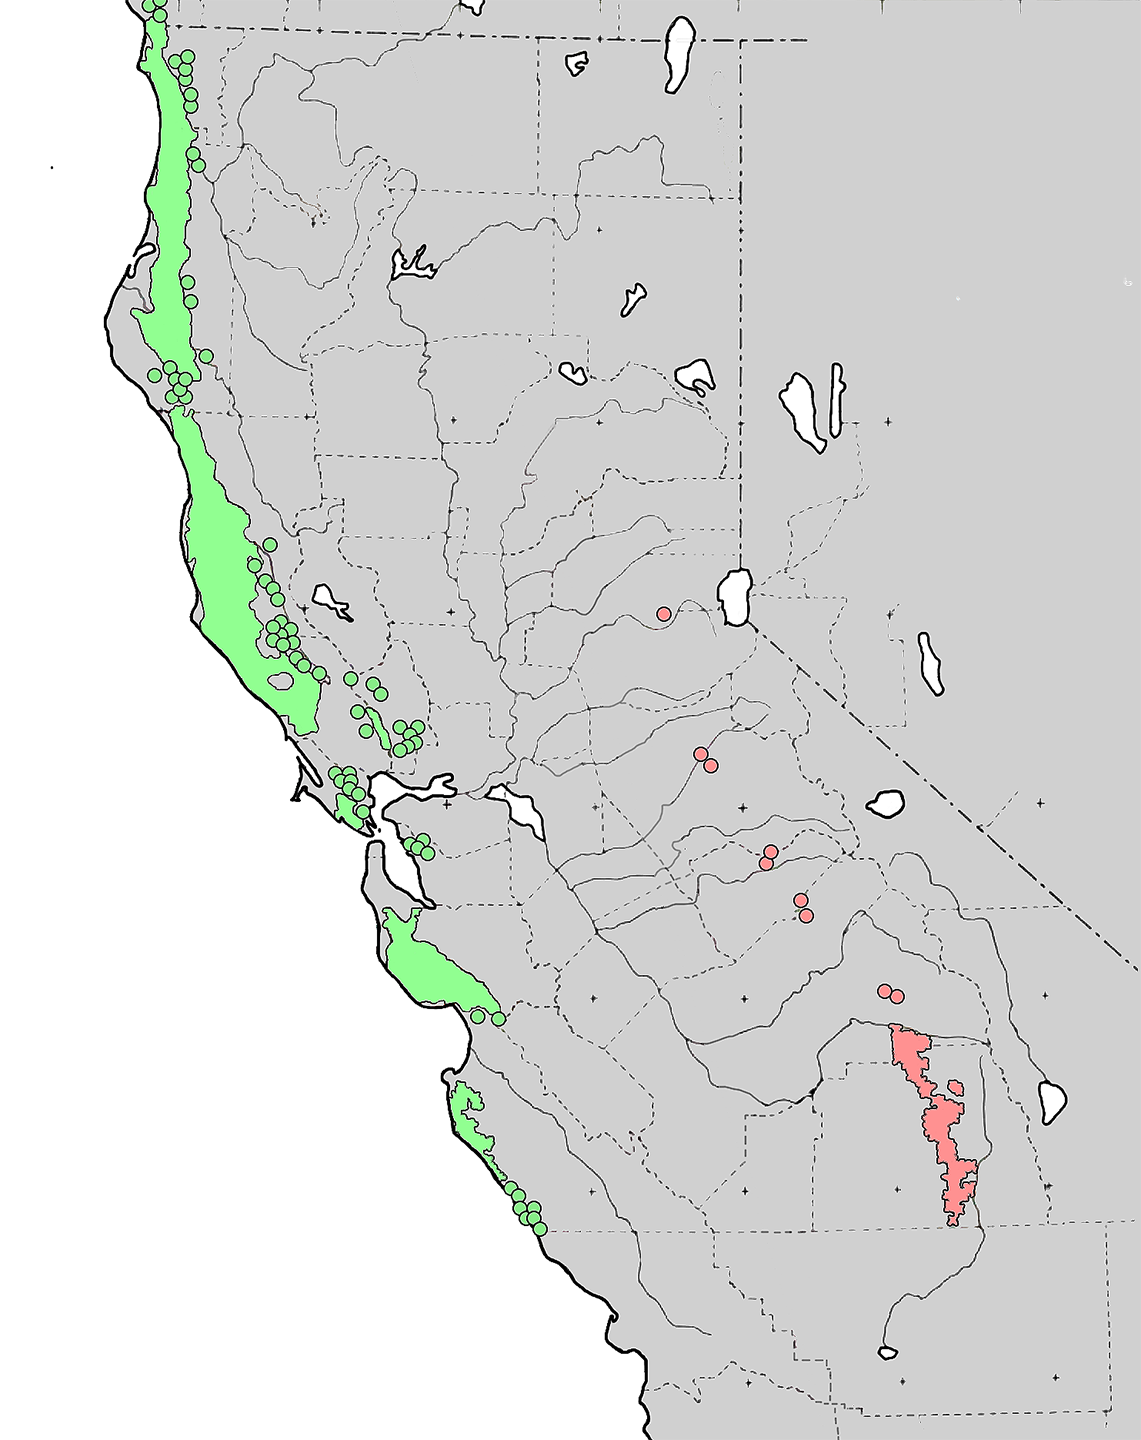 Ареал секвойядендрона гигантского. Ареал секвойи вечнозеленой. Дерево Секвойя на карте Северной Америки. Ареал произрастания секвойи на карте. Секвойя природная зона северной америки